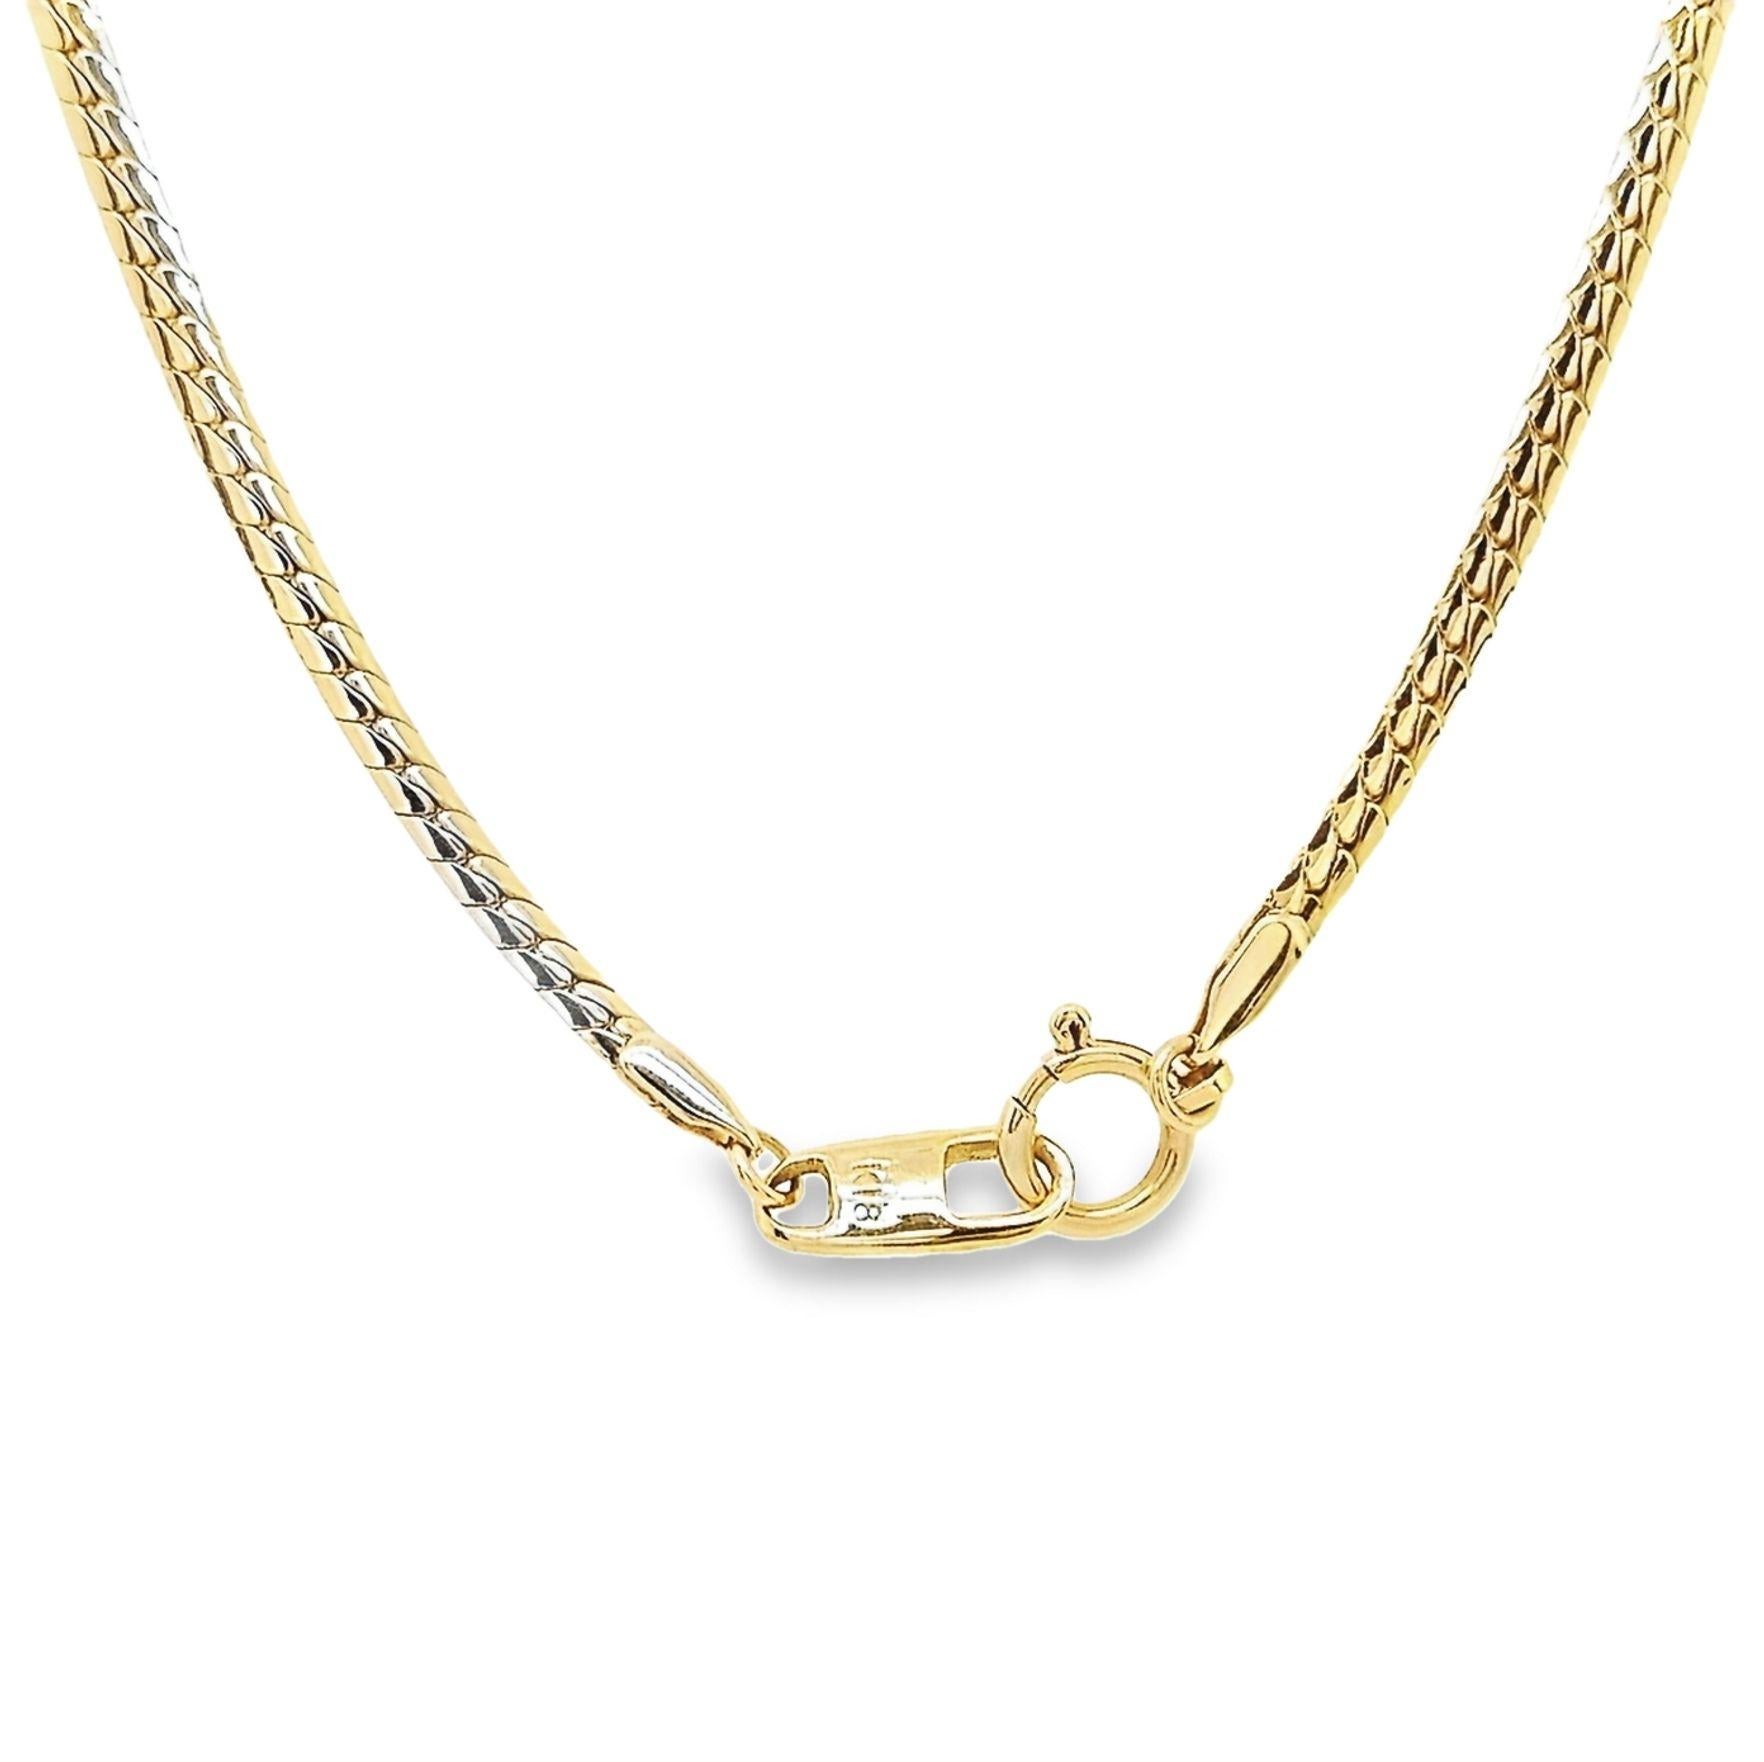 IGI-zertifizierte Halskette aus 18 Karat Gelbgold mit 5,14 Karat kolumbianischem Smaragd und 1,46 Karat Diamanten Damen